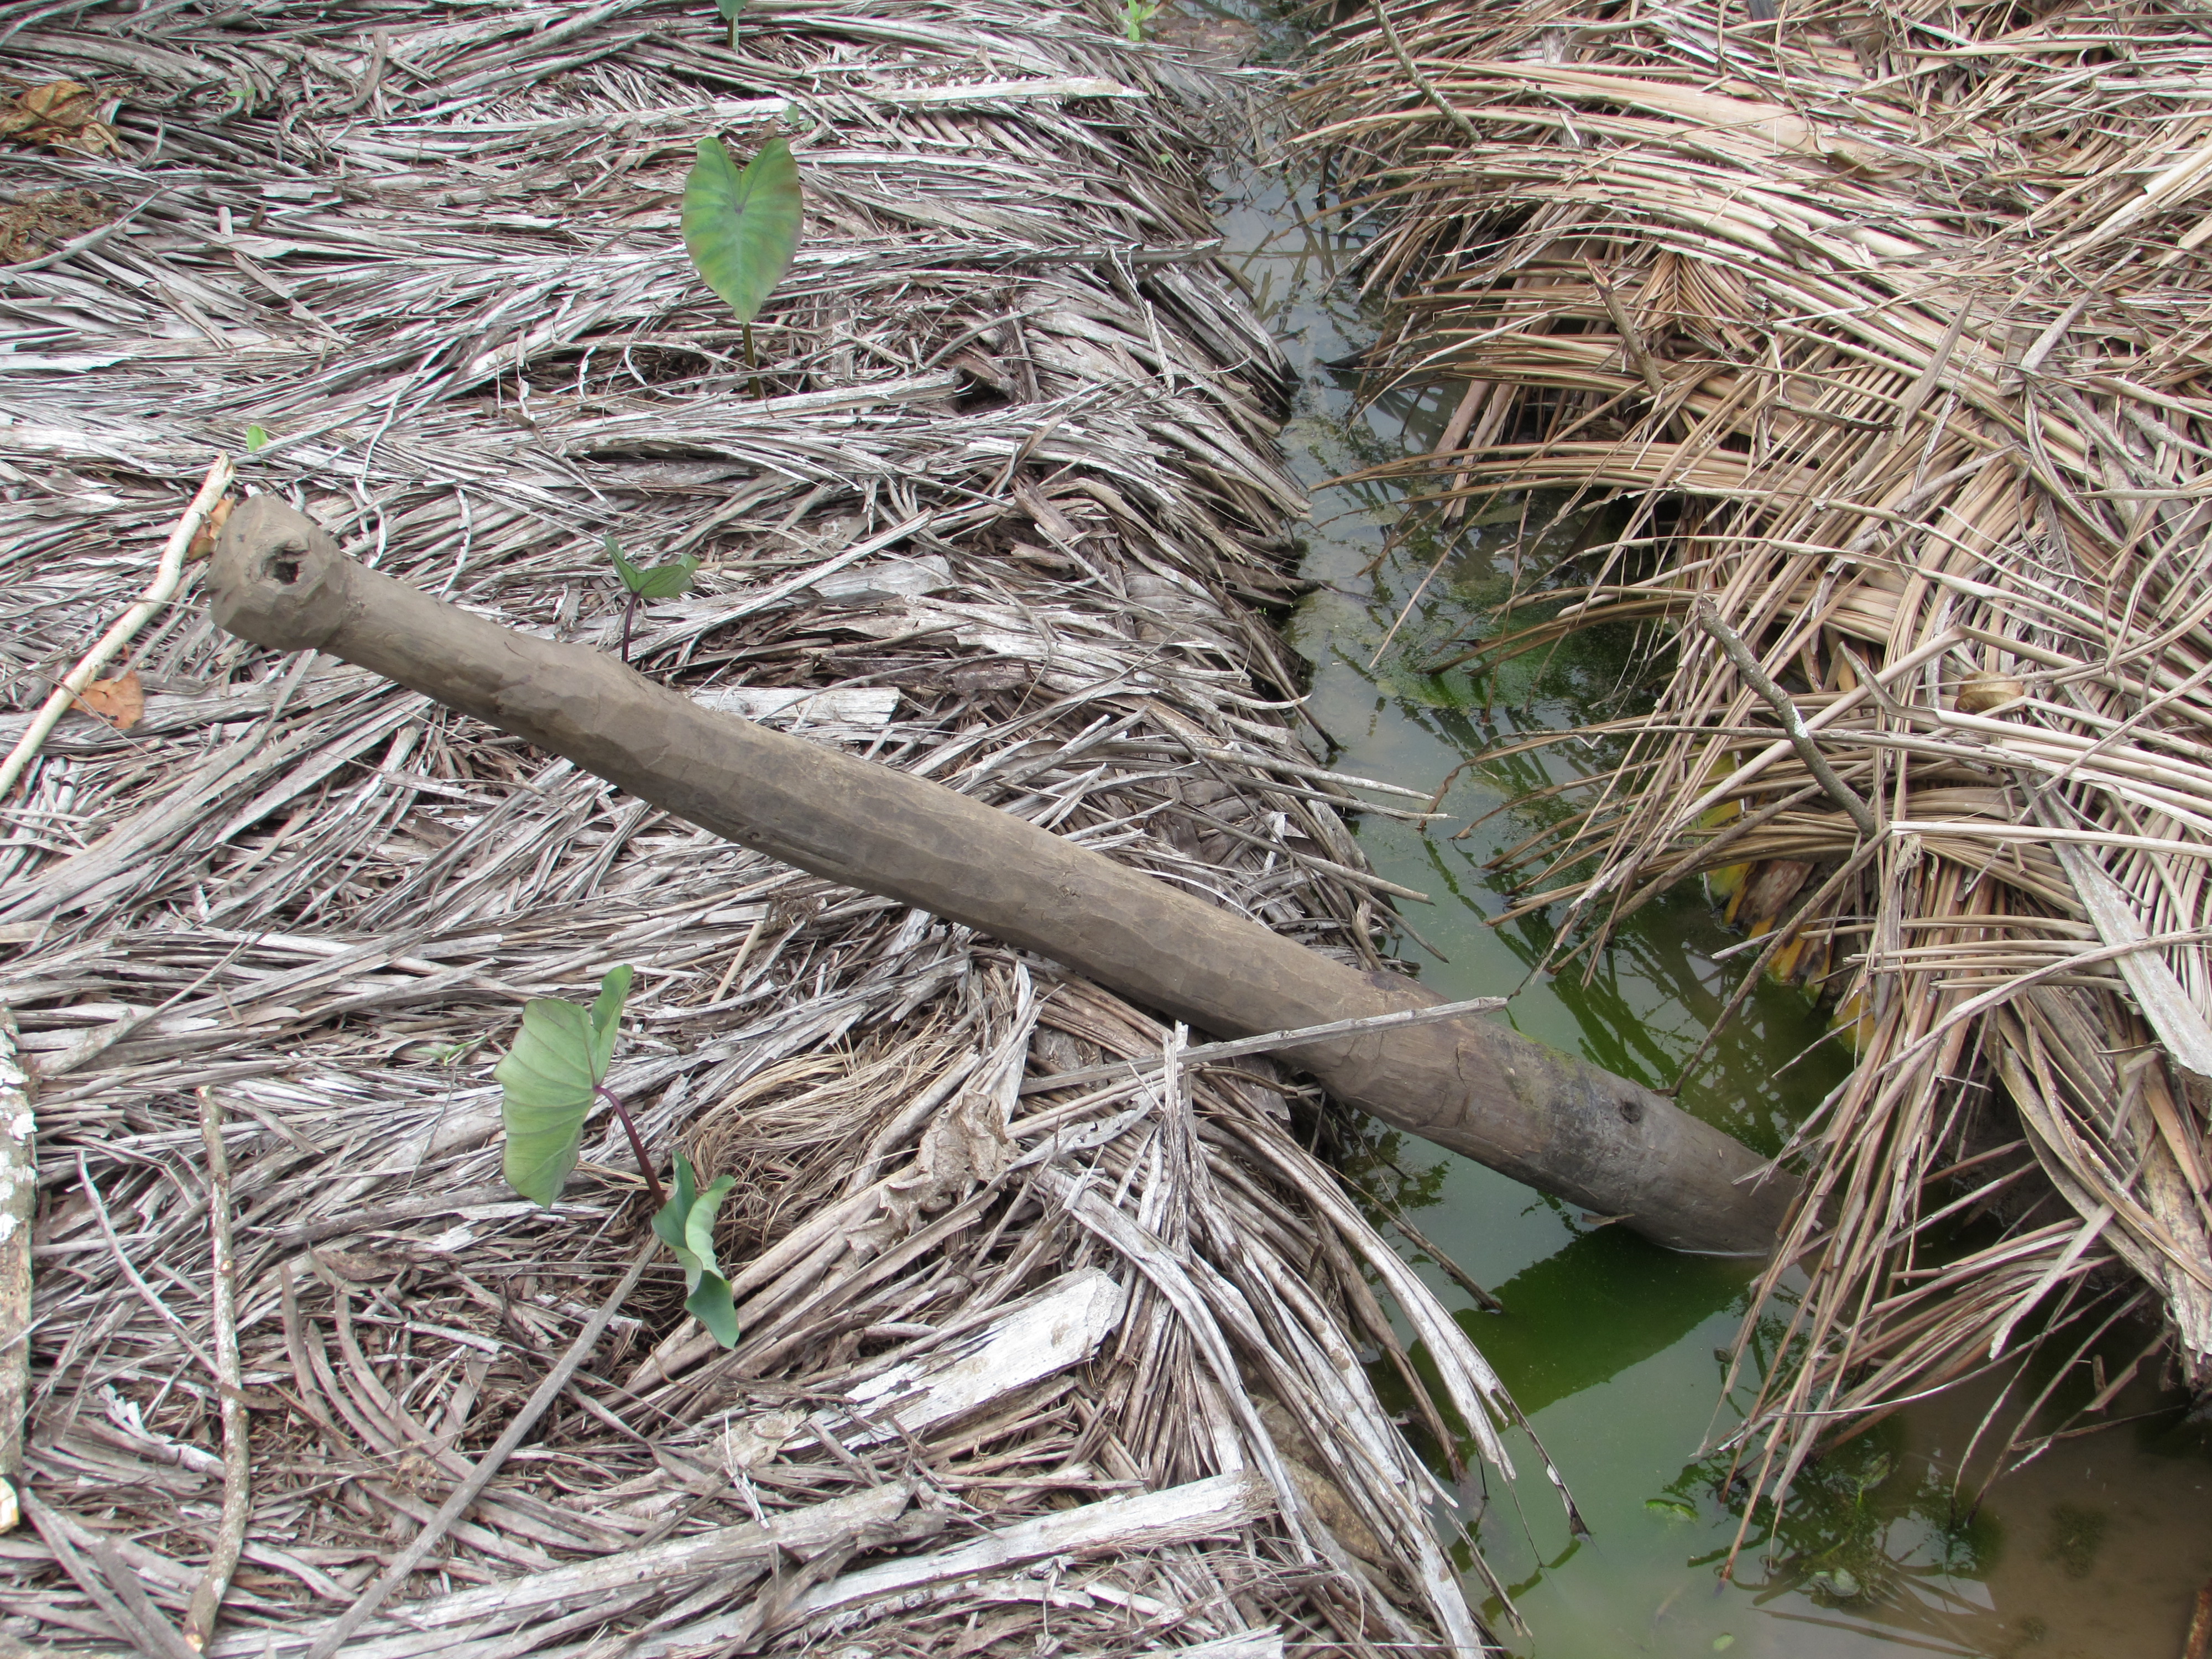 Canal inter-tarodière, dans lequel a été laissé l'outil pour former les trou pour les jeunes plants de taro.